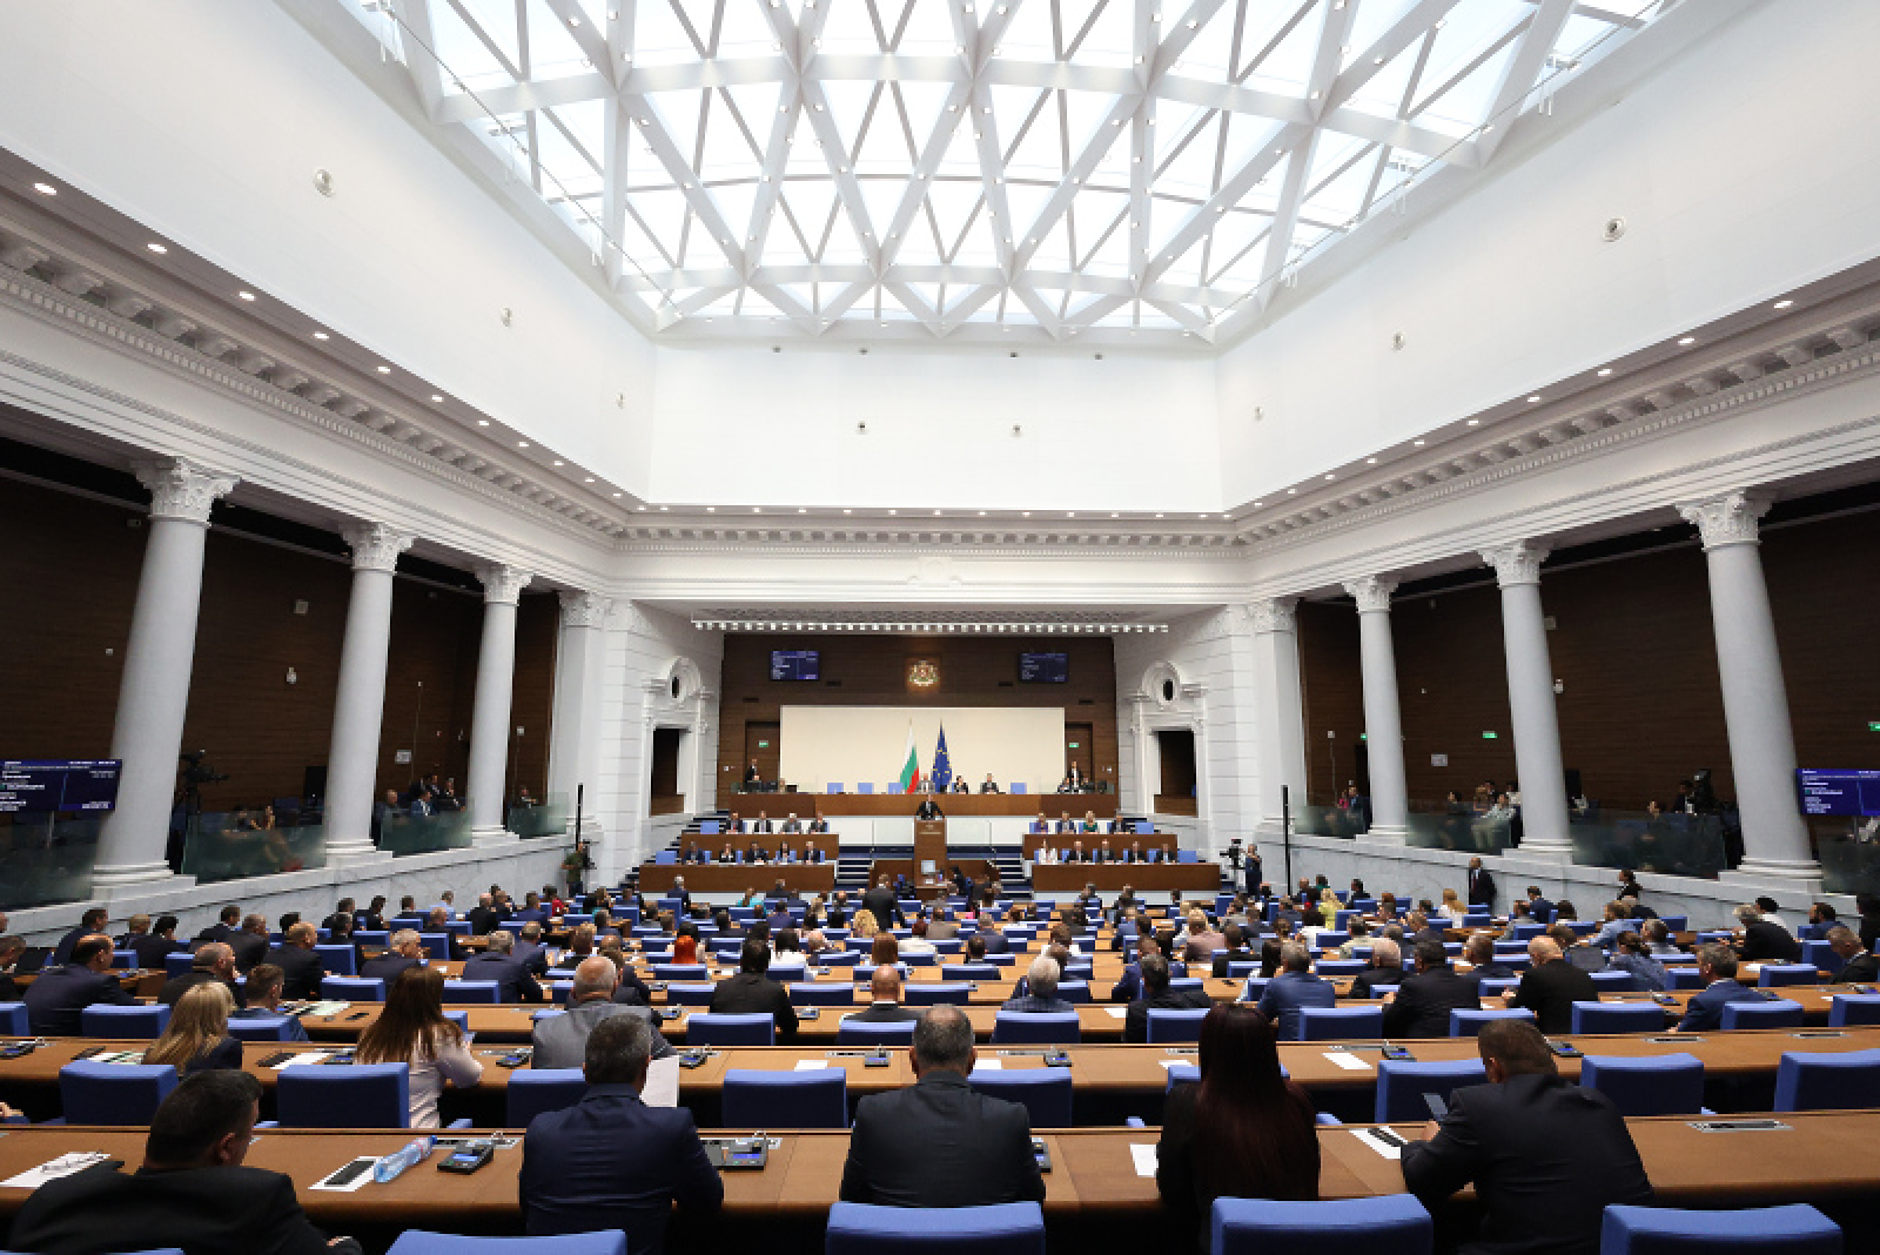 Свикват извънредно заседание на парламента в петък заради президентското вето върху Закона за енергетиката